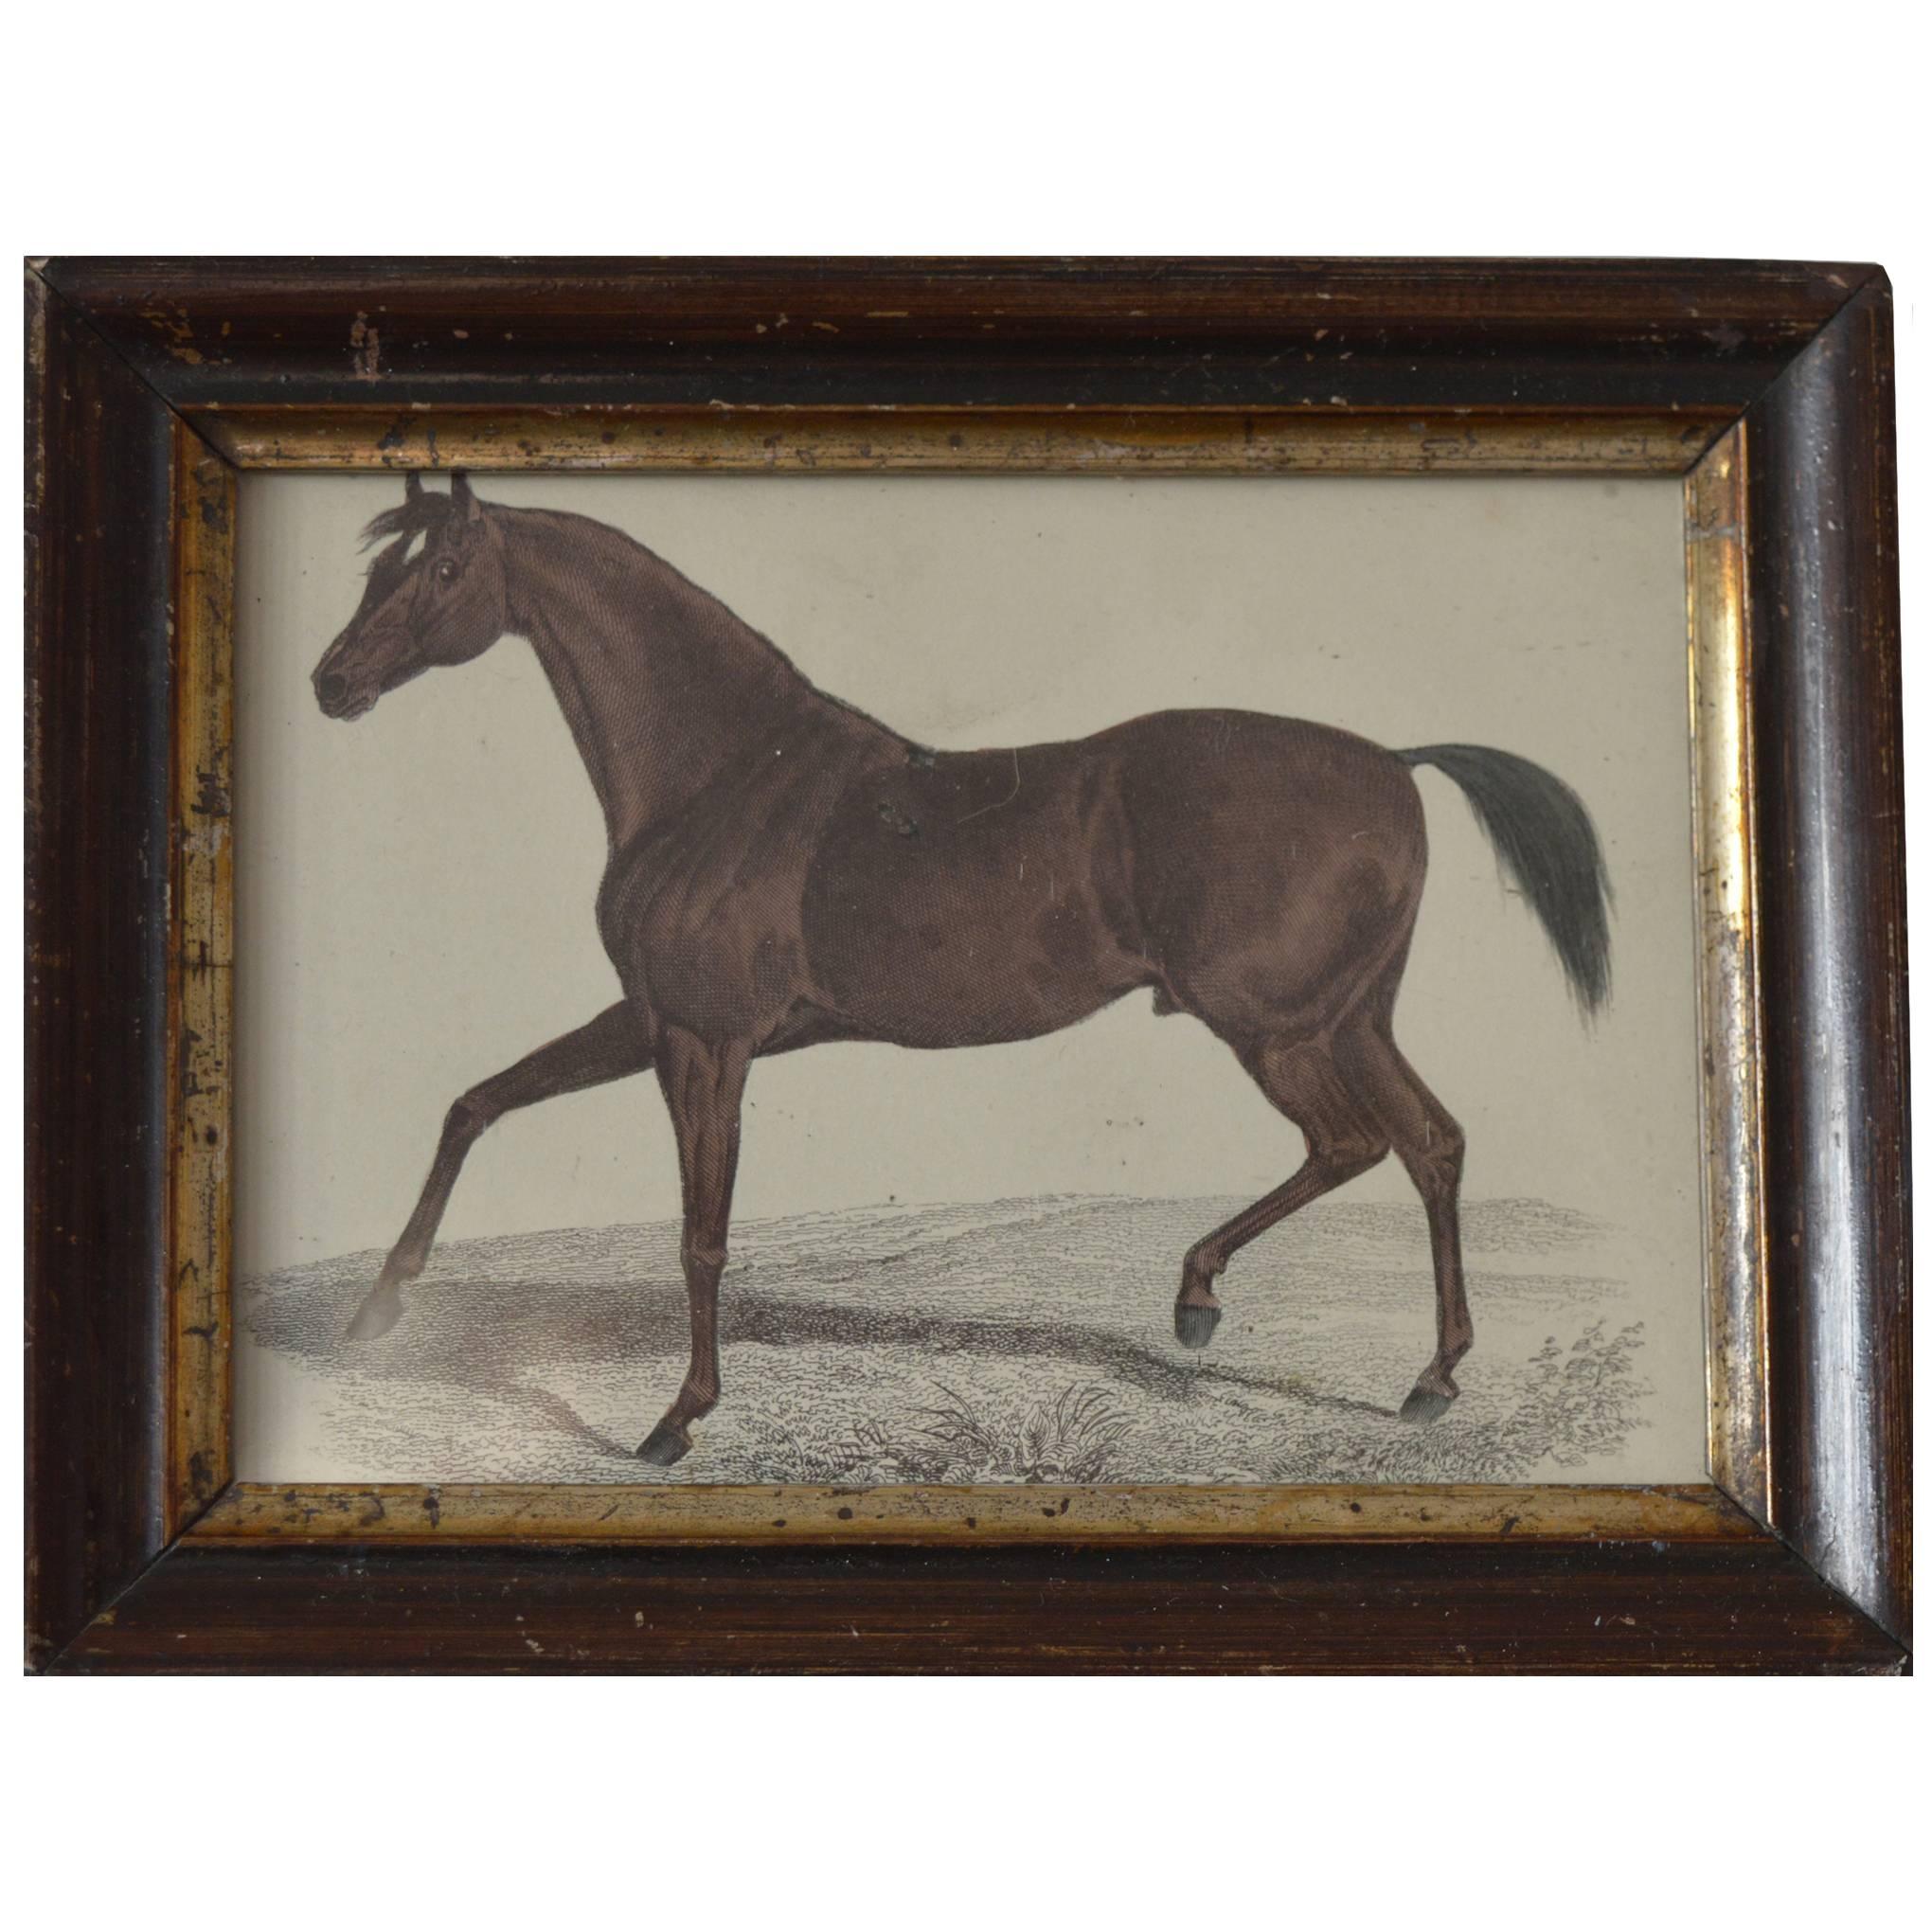 Original Antique Print of a Horse ( Chestnut ) circa 1850